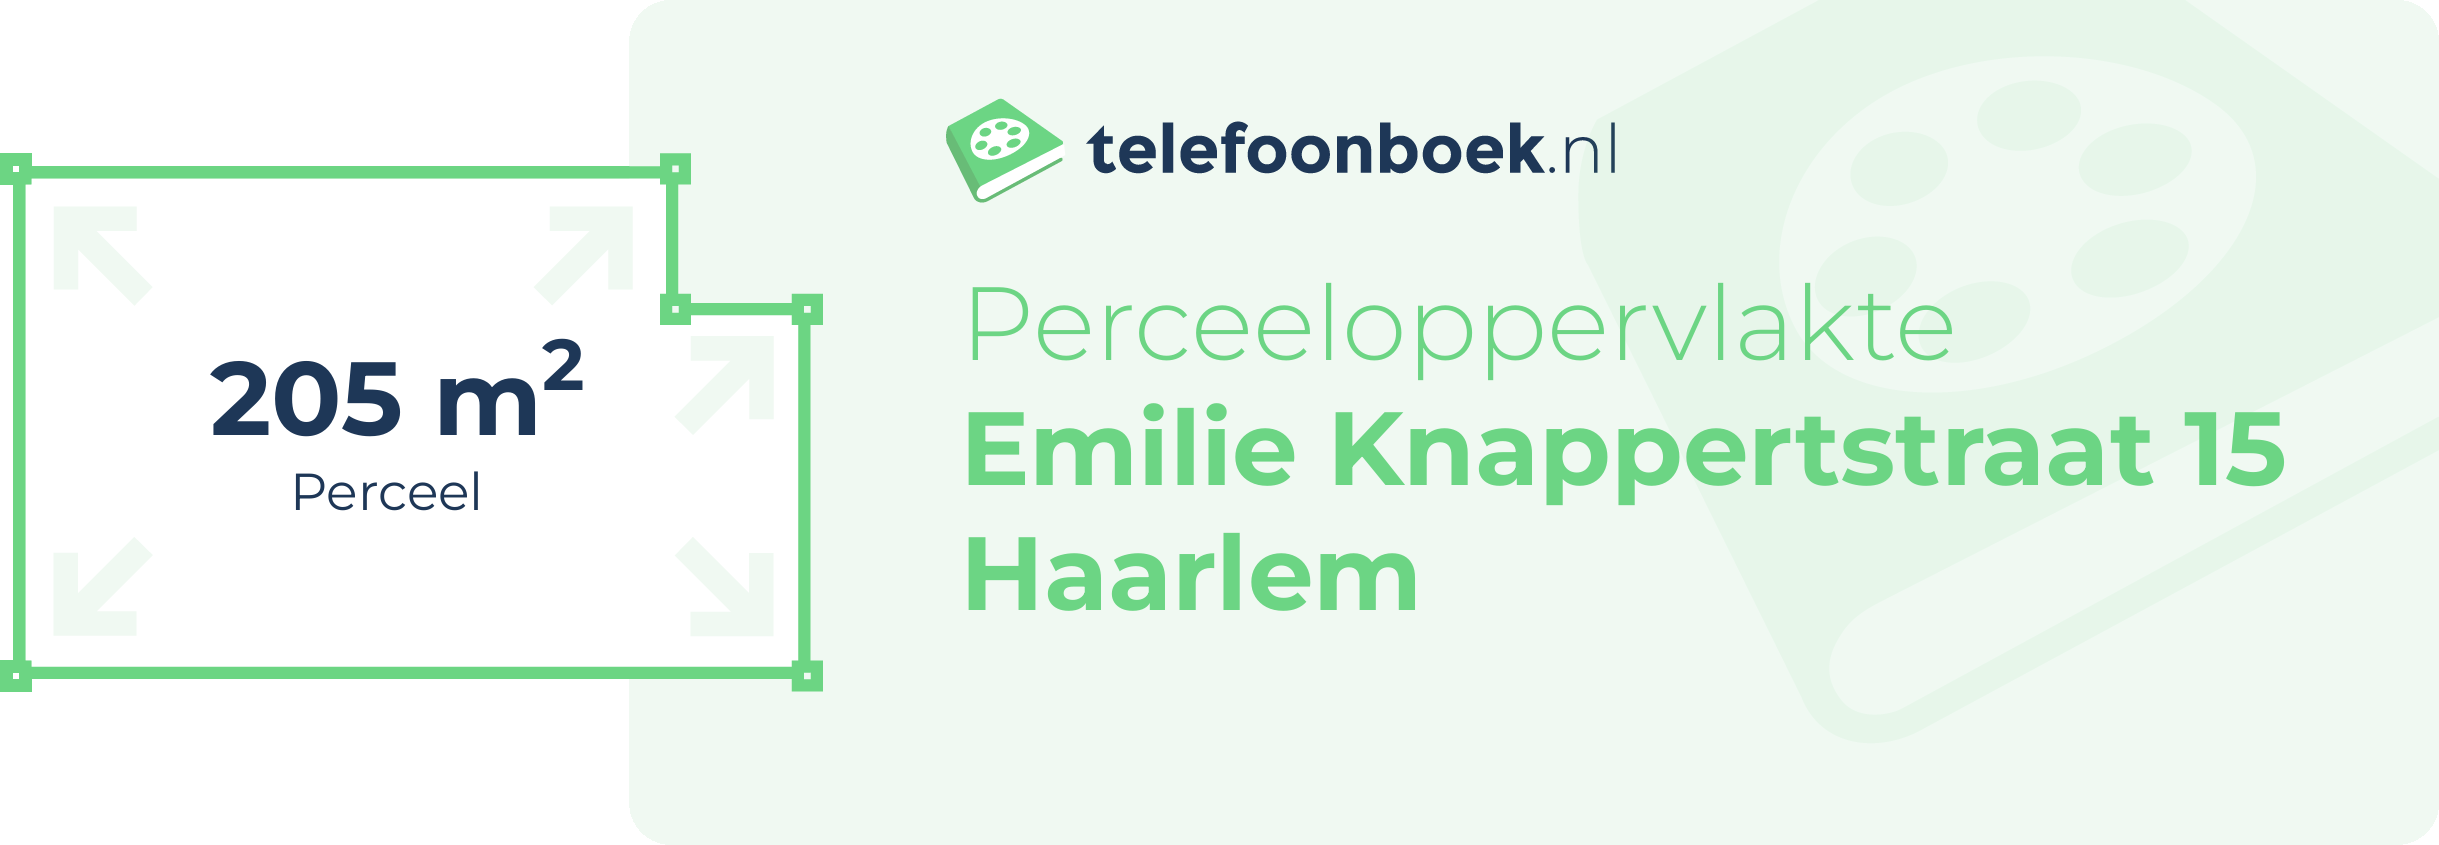 Perceeloppervlakte Emilie Knappertstraat 15 Haarlem